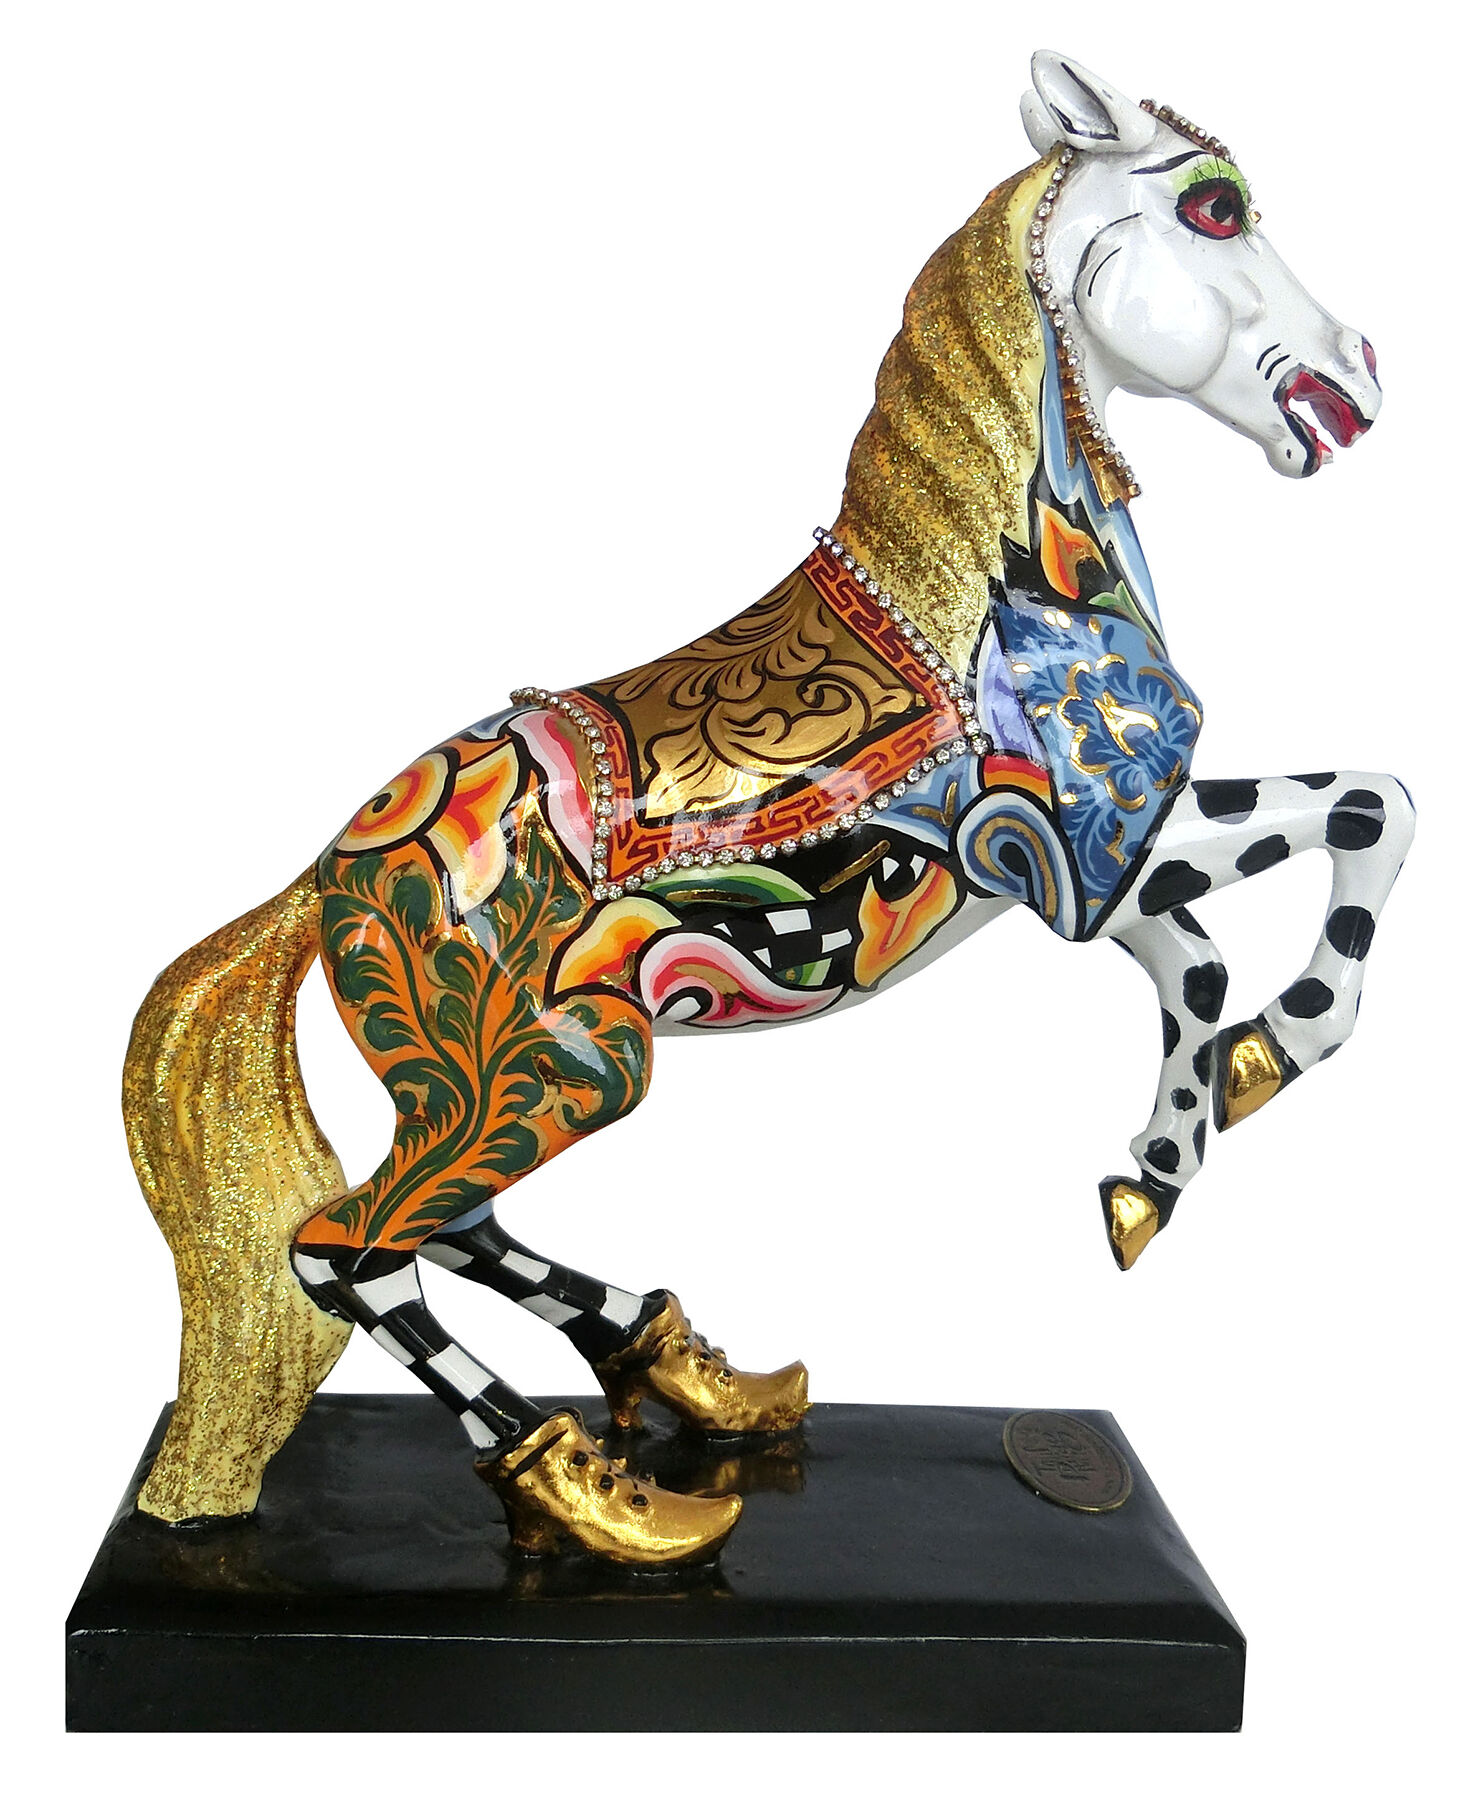 Hesteskulptur "White Champion", støbt von Tom's Drag